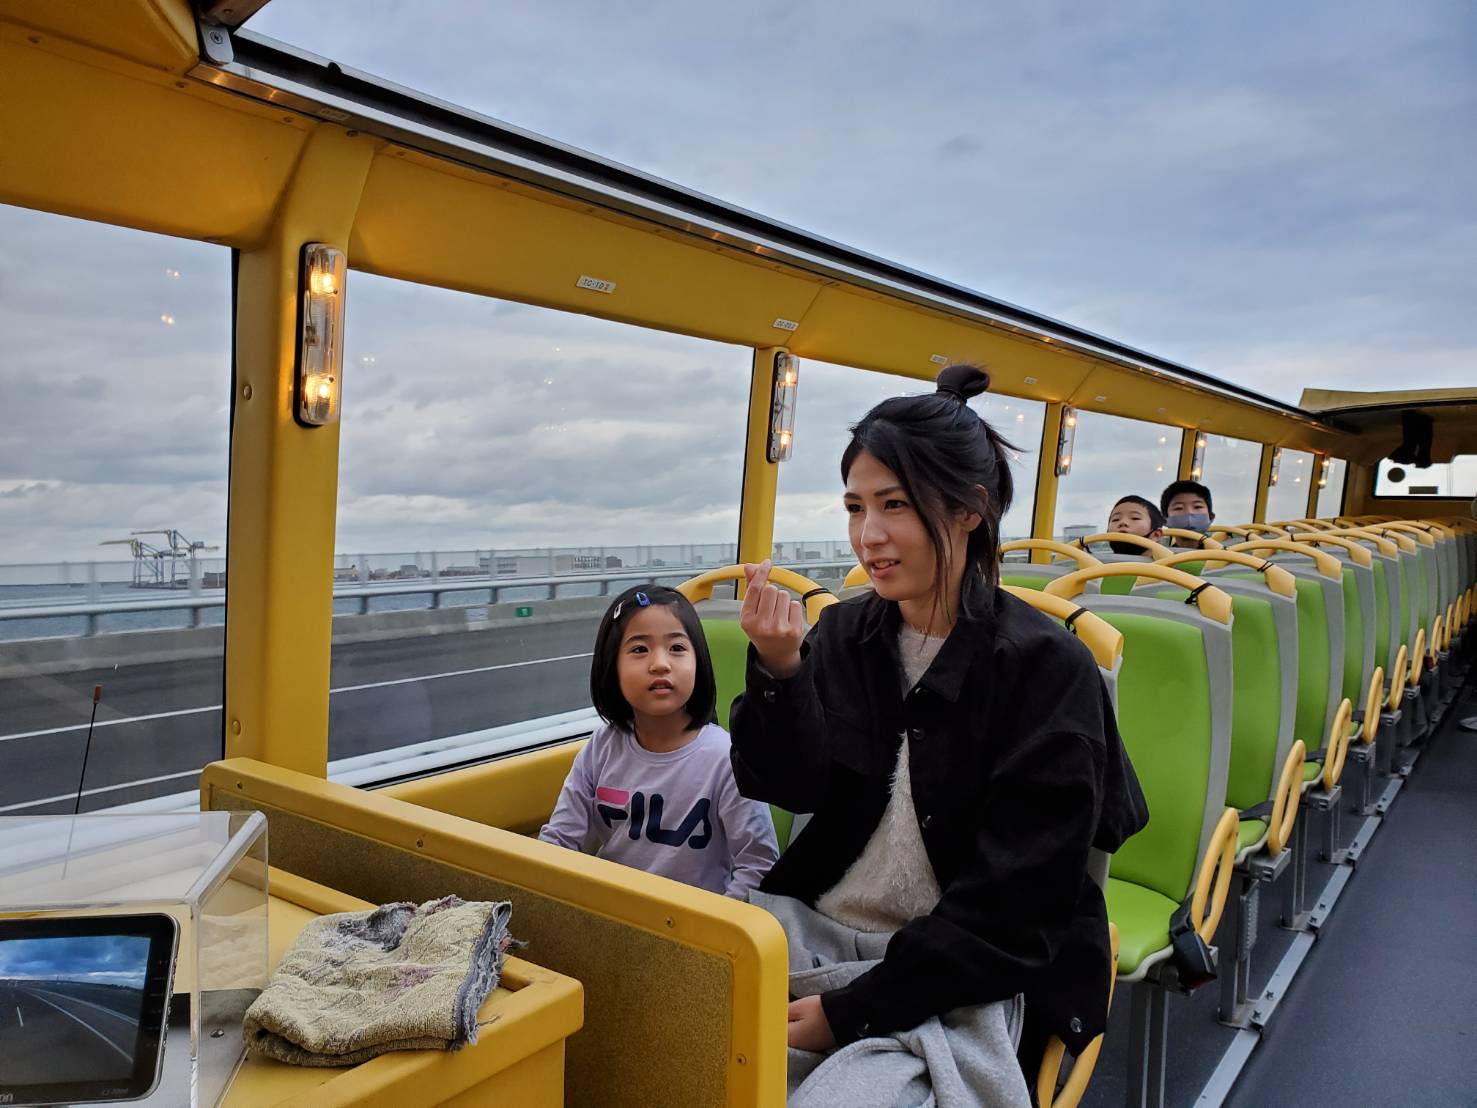 오키나와 본섬 첫 등장!기분이 상쾌한 오픈 톱 버스 에서 오키나와의 새로운 경치를 즐기자♪